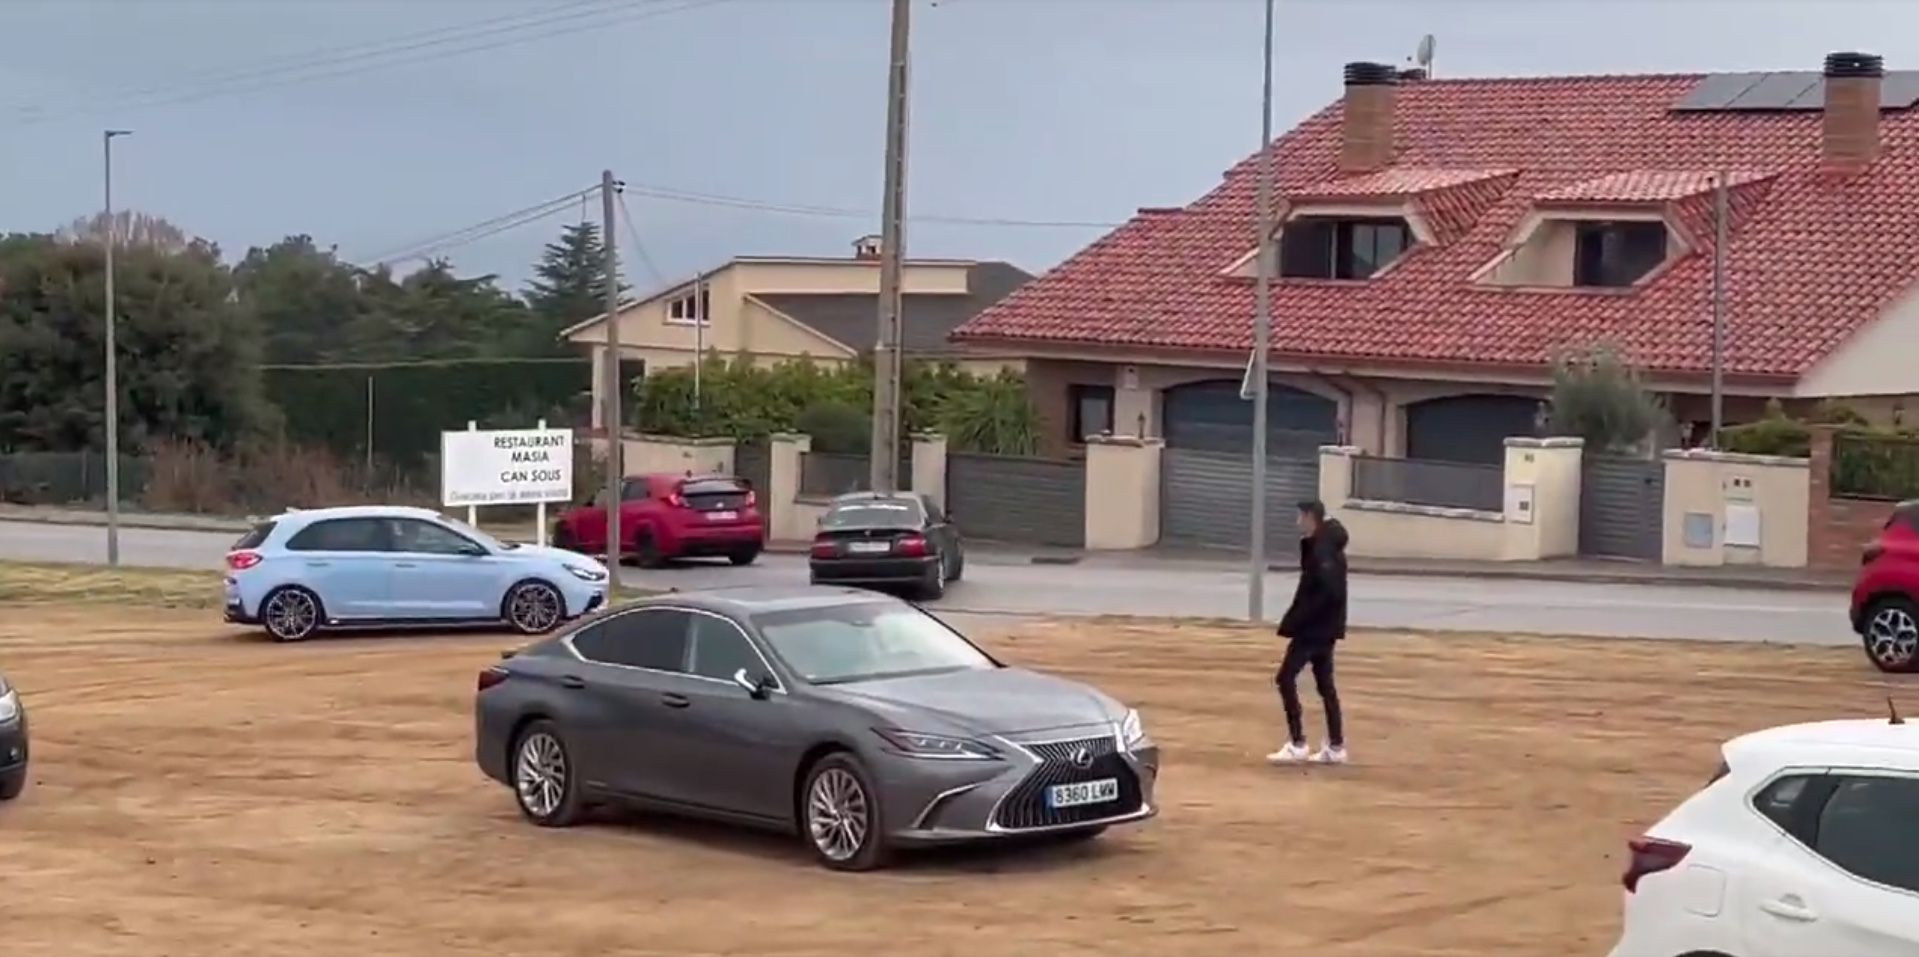 VÍDEO: Hacen un 'sinpa' en un restaurante escapándose en coche tras una cuenta de 1.000 euros